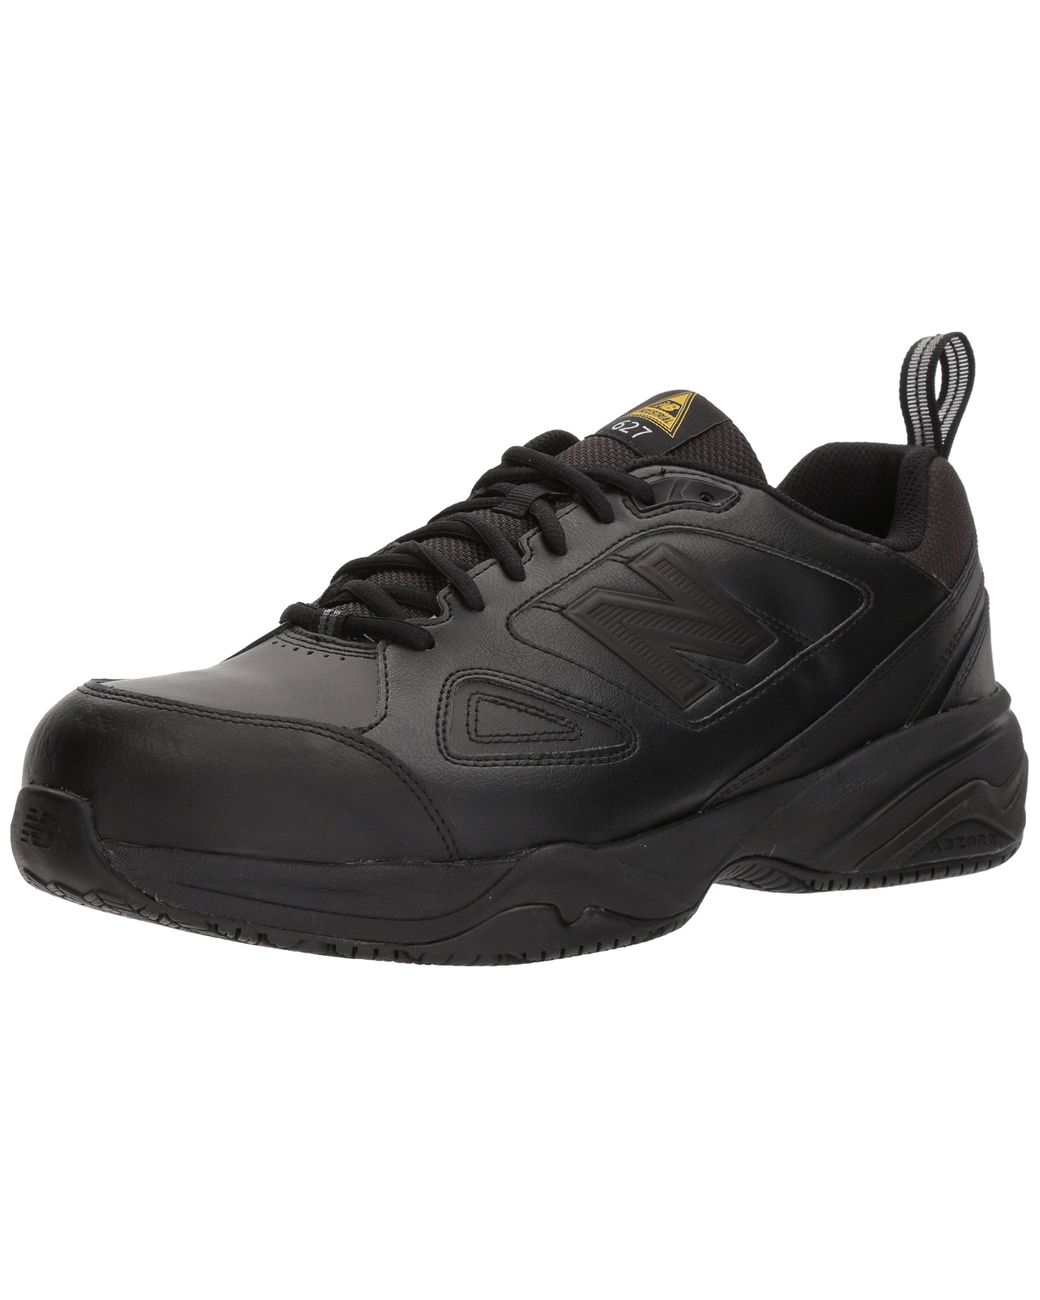 New Balance Suede 627 V2 Steel Toe Work Shoe in Black/Black (Black) for ...